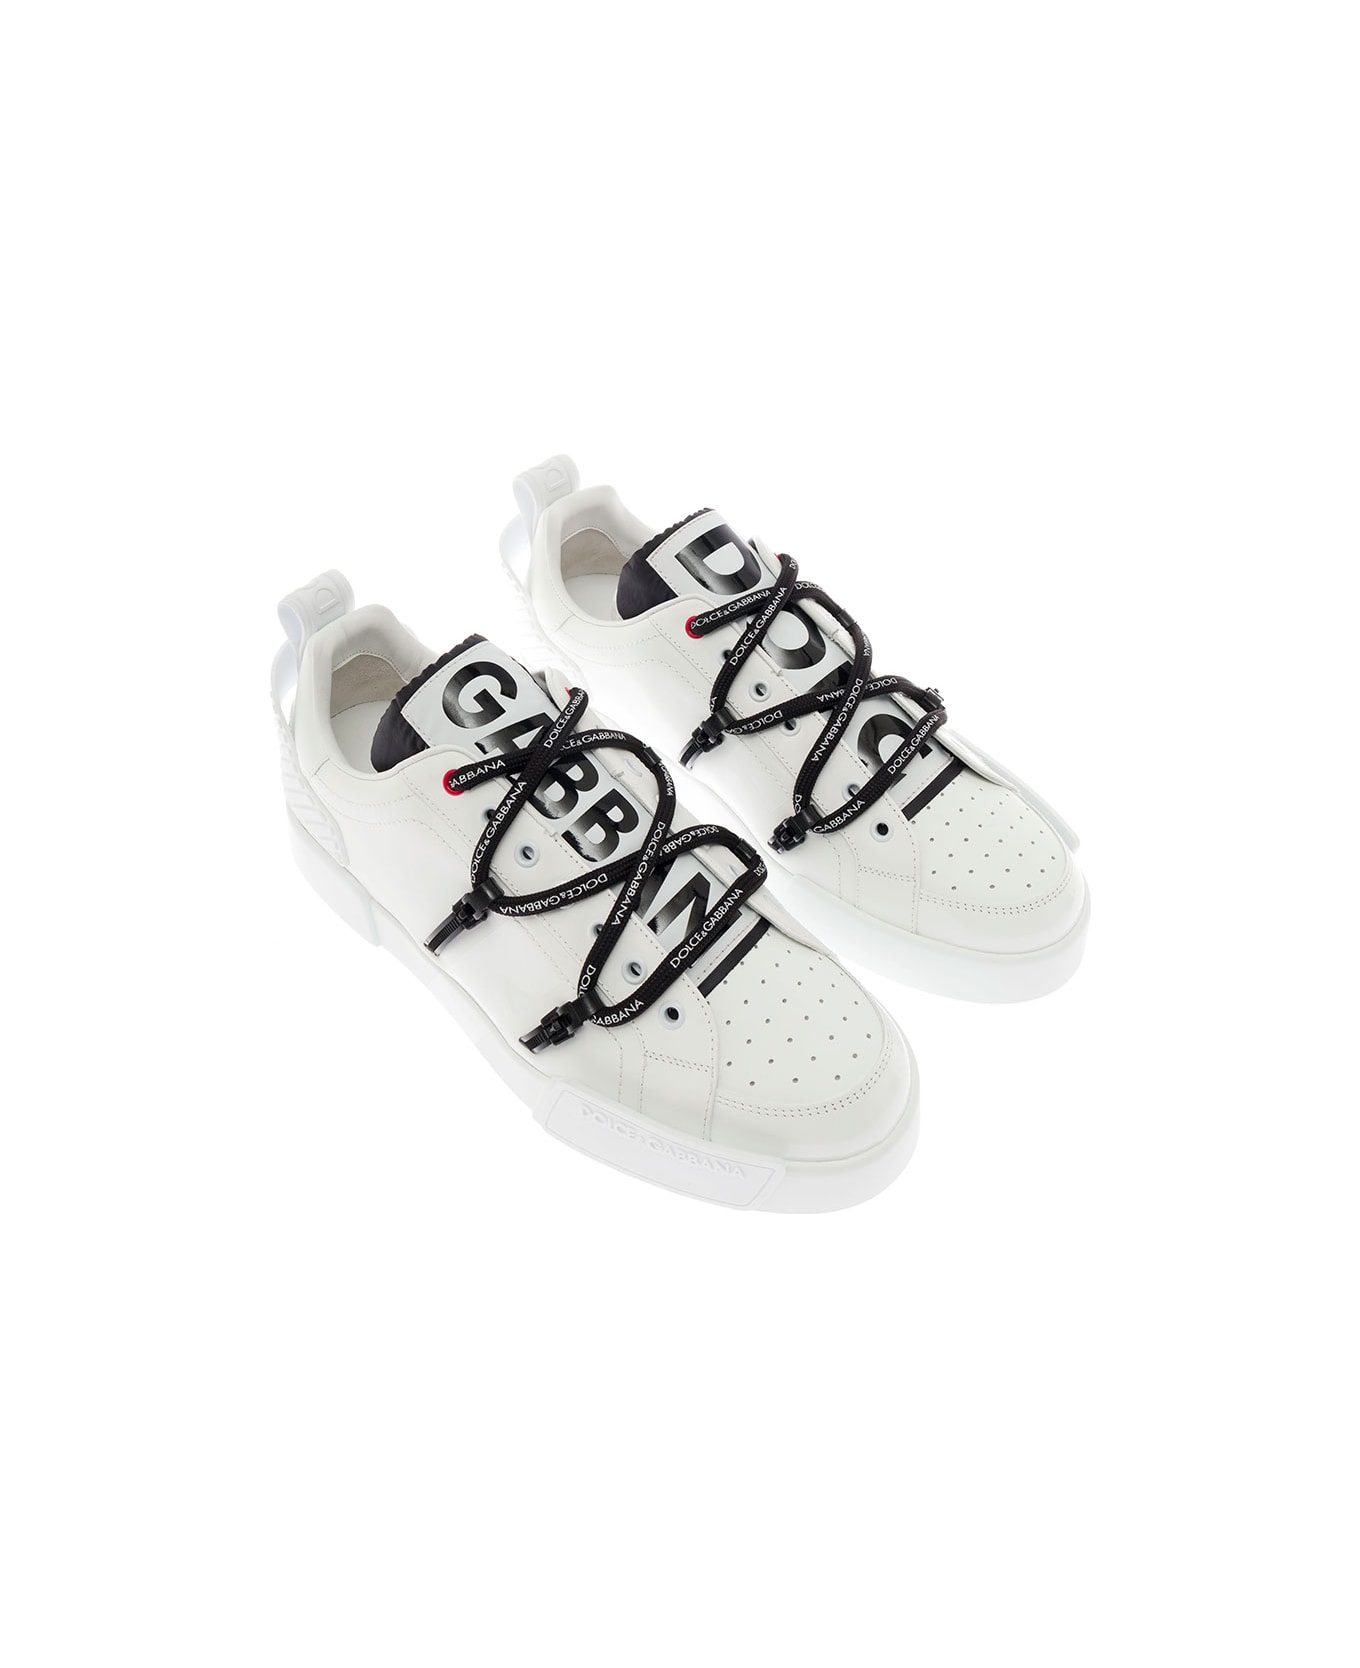 Dolce & Gabbana Man's Portofino White Leather And Patent Sneakers - White/black